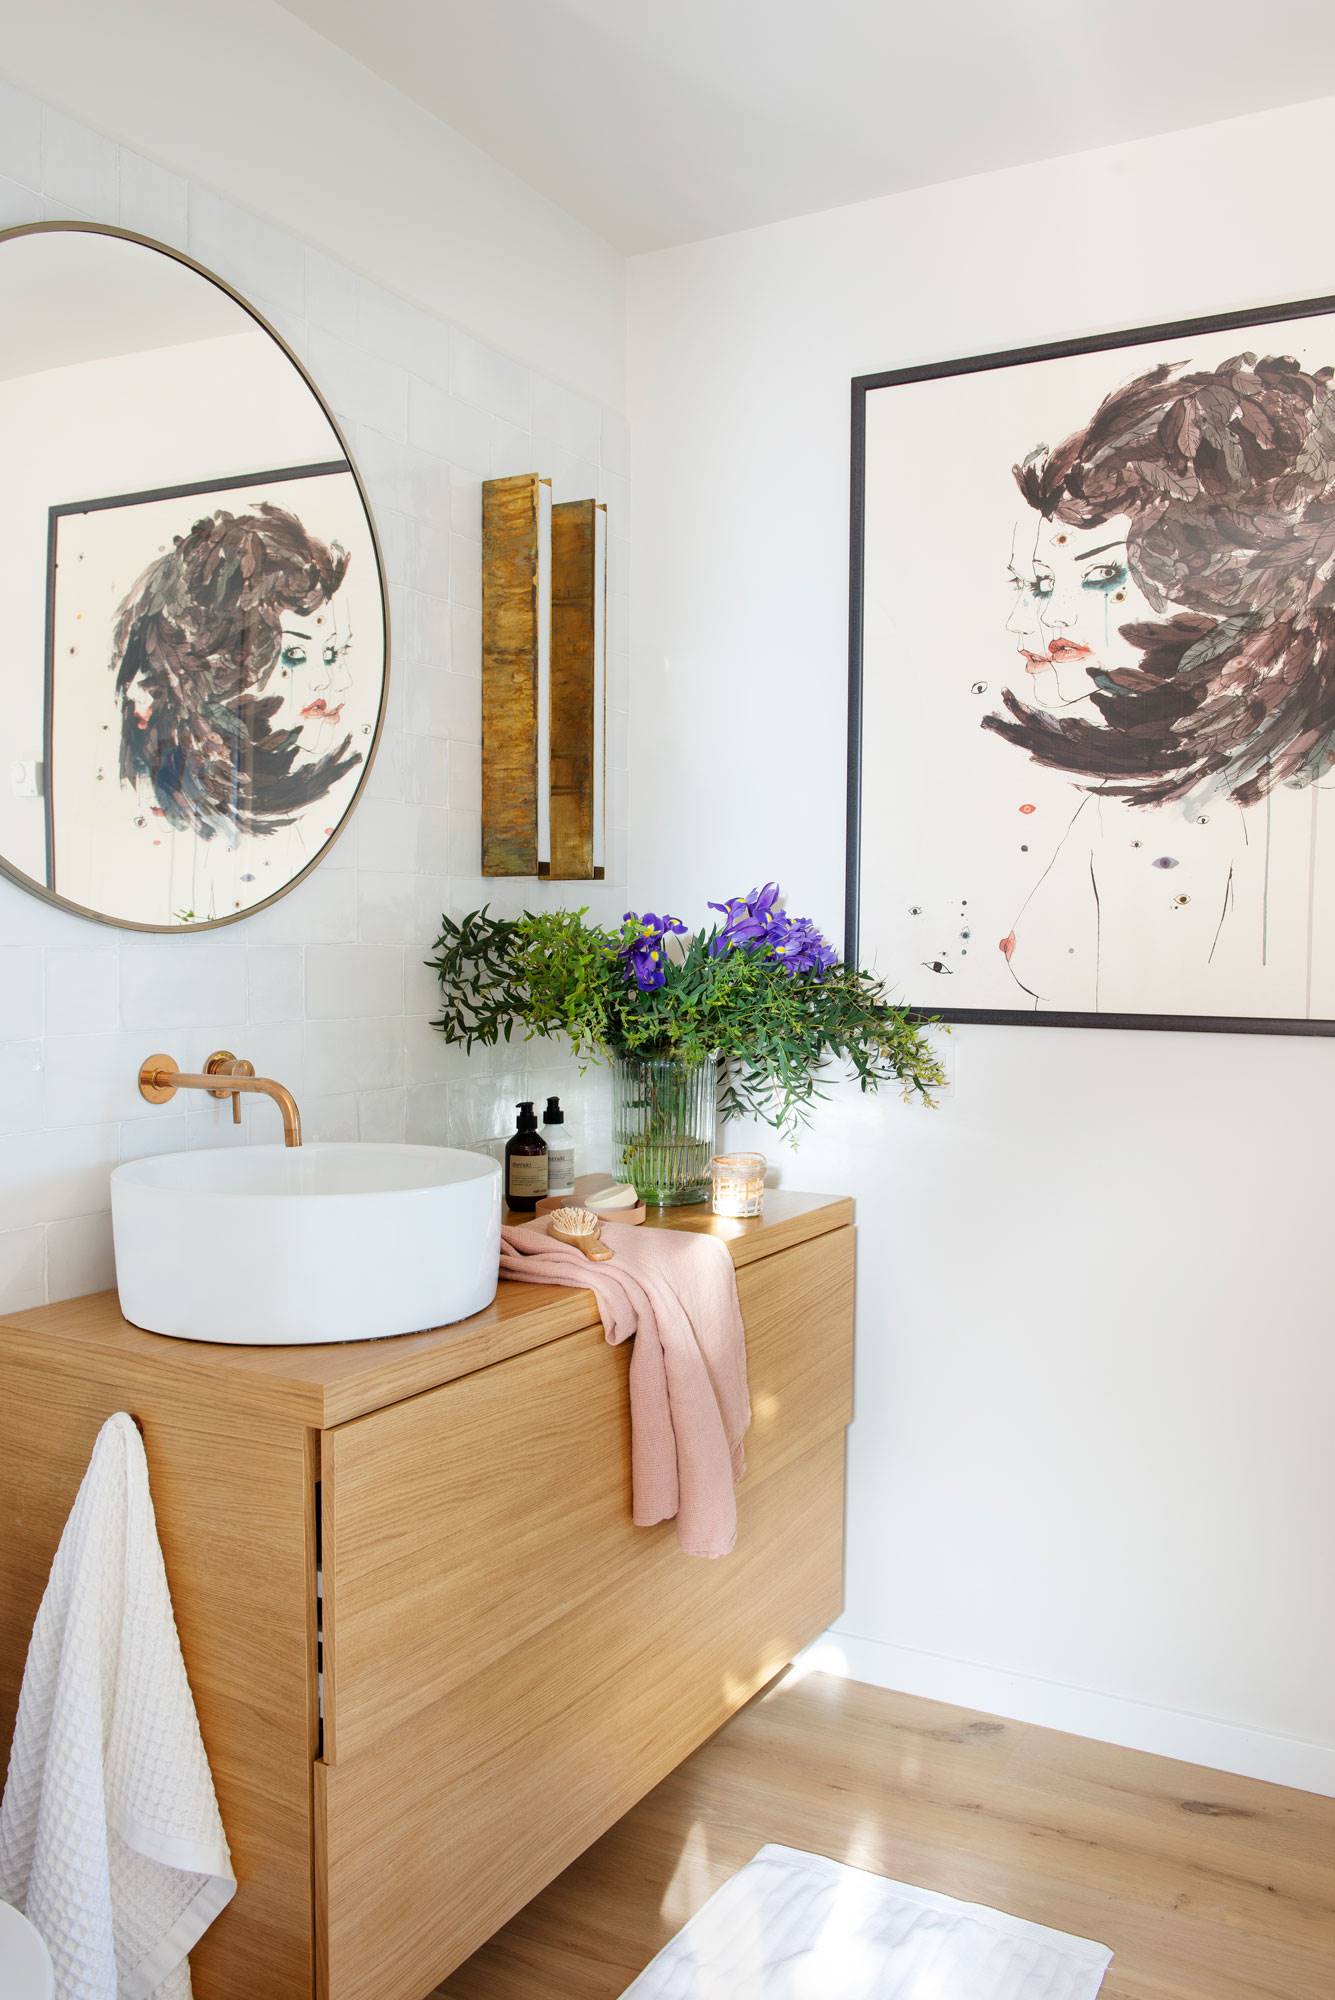 Baño con mueble de madera, espejo redondo y cuadro sobre la pared 00508577 O